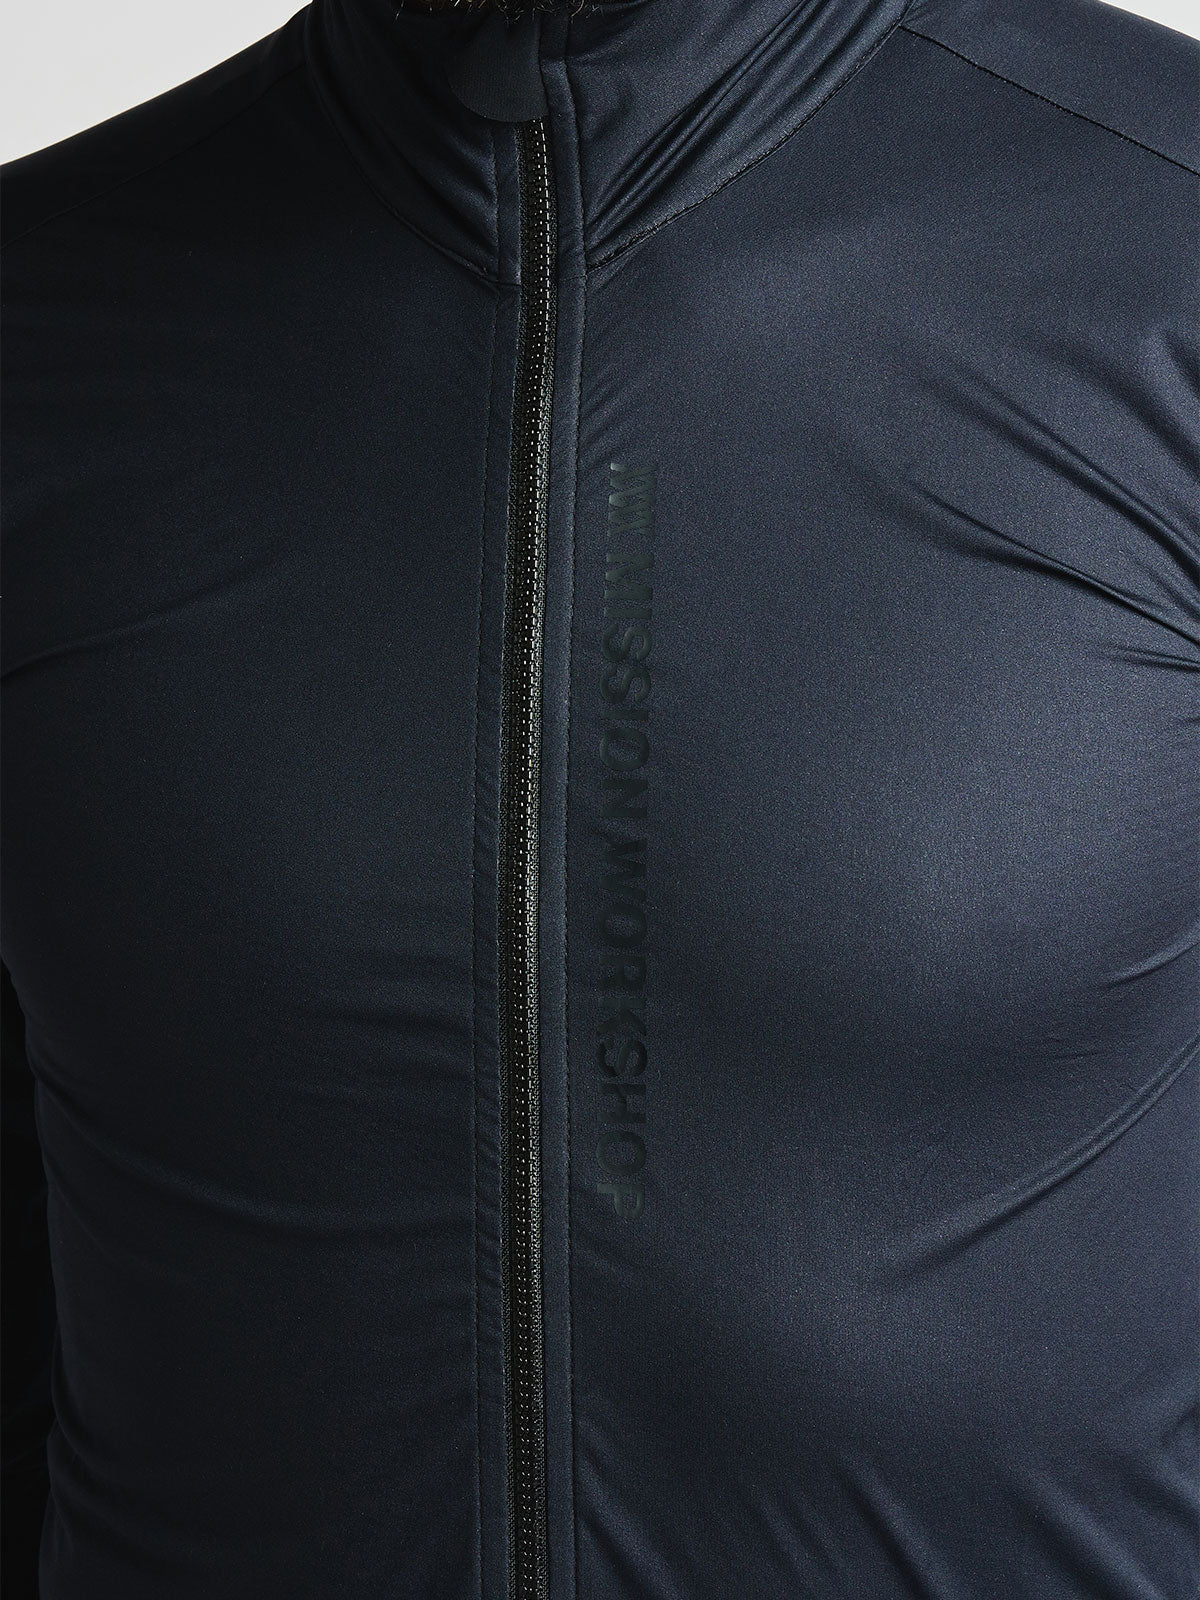 Altosphere Jacket by Mission Workshop - Bolsas impermeables y ropa técnica - San Francisco y Los Angeles - Construido para durar - Garantizado para siempre